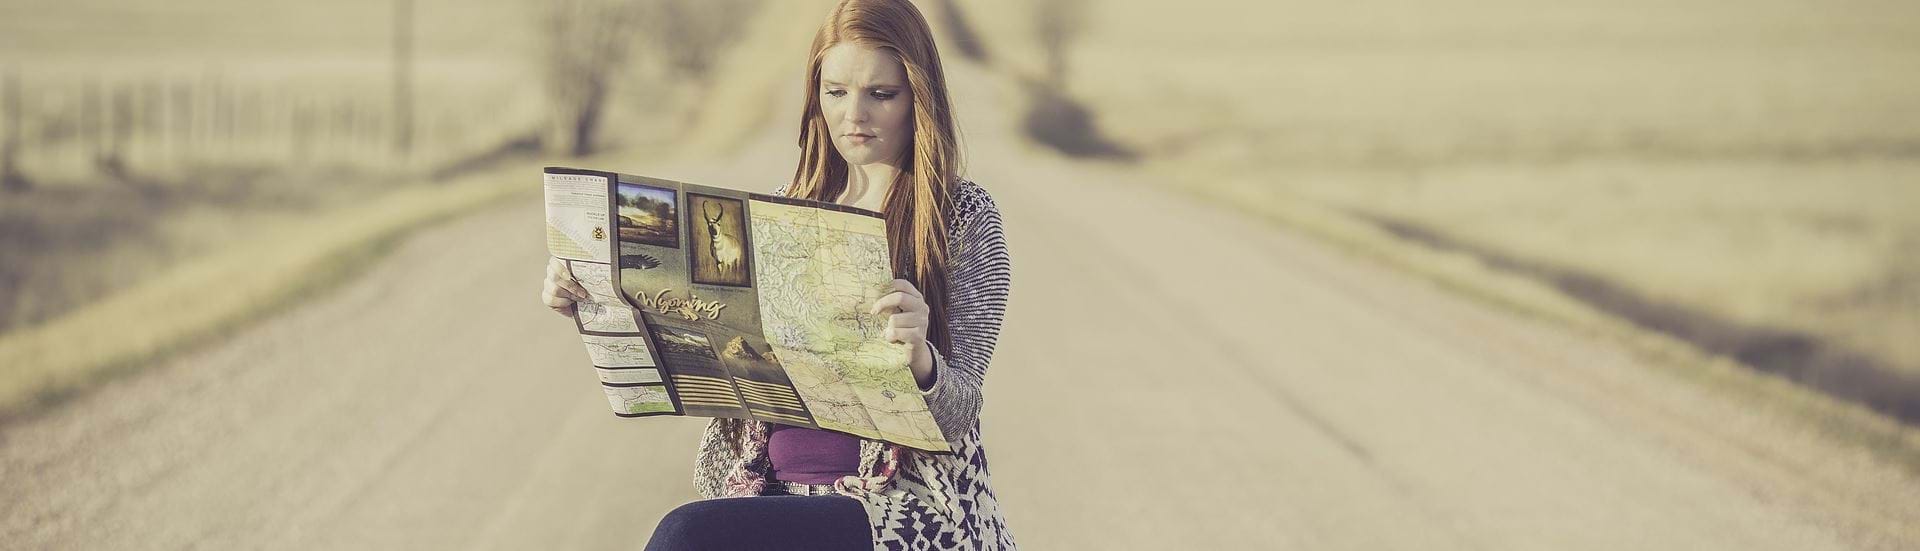 En ung kvinde sidder på en kasse midt på en landevej og kigger på kort. Ved siden af hende står en kuffert og en globus.